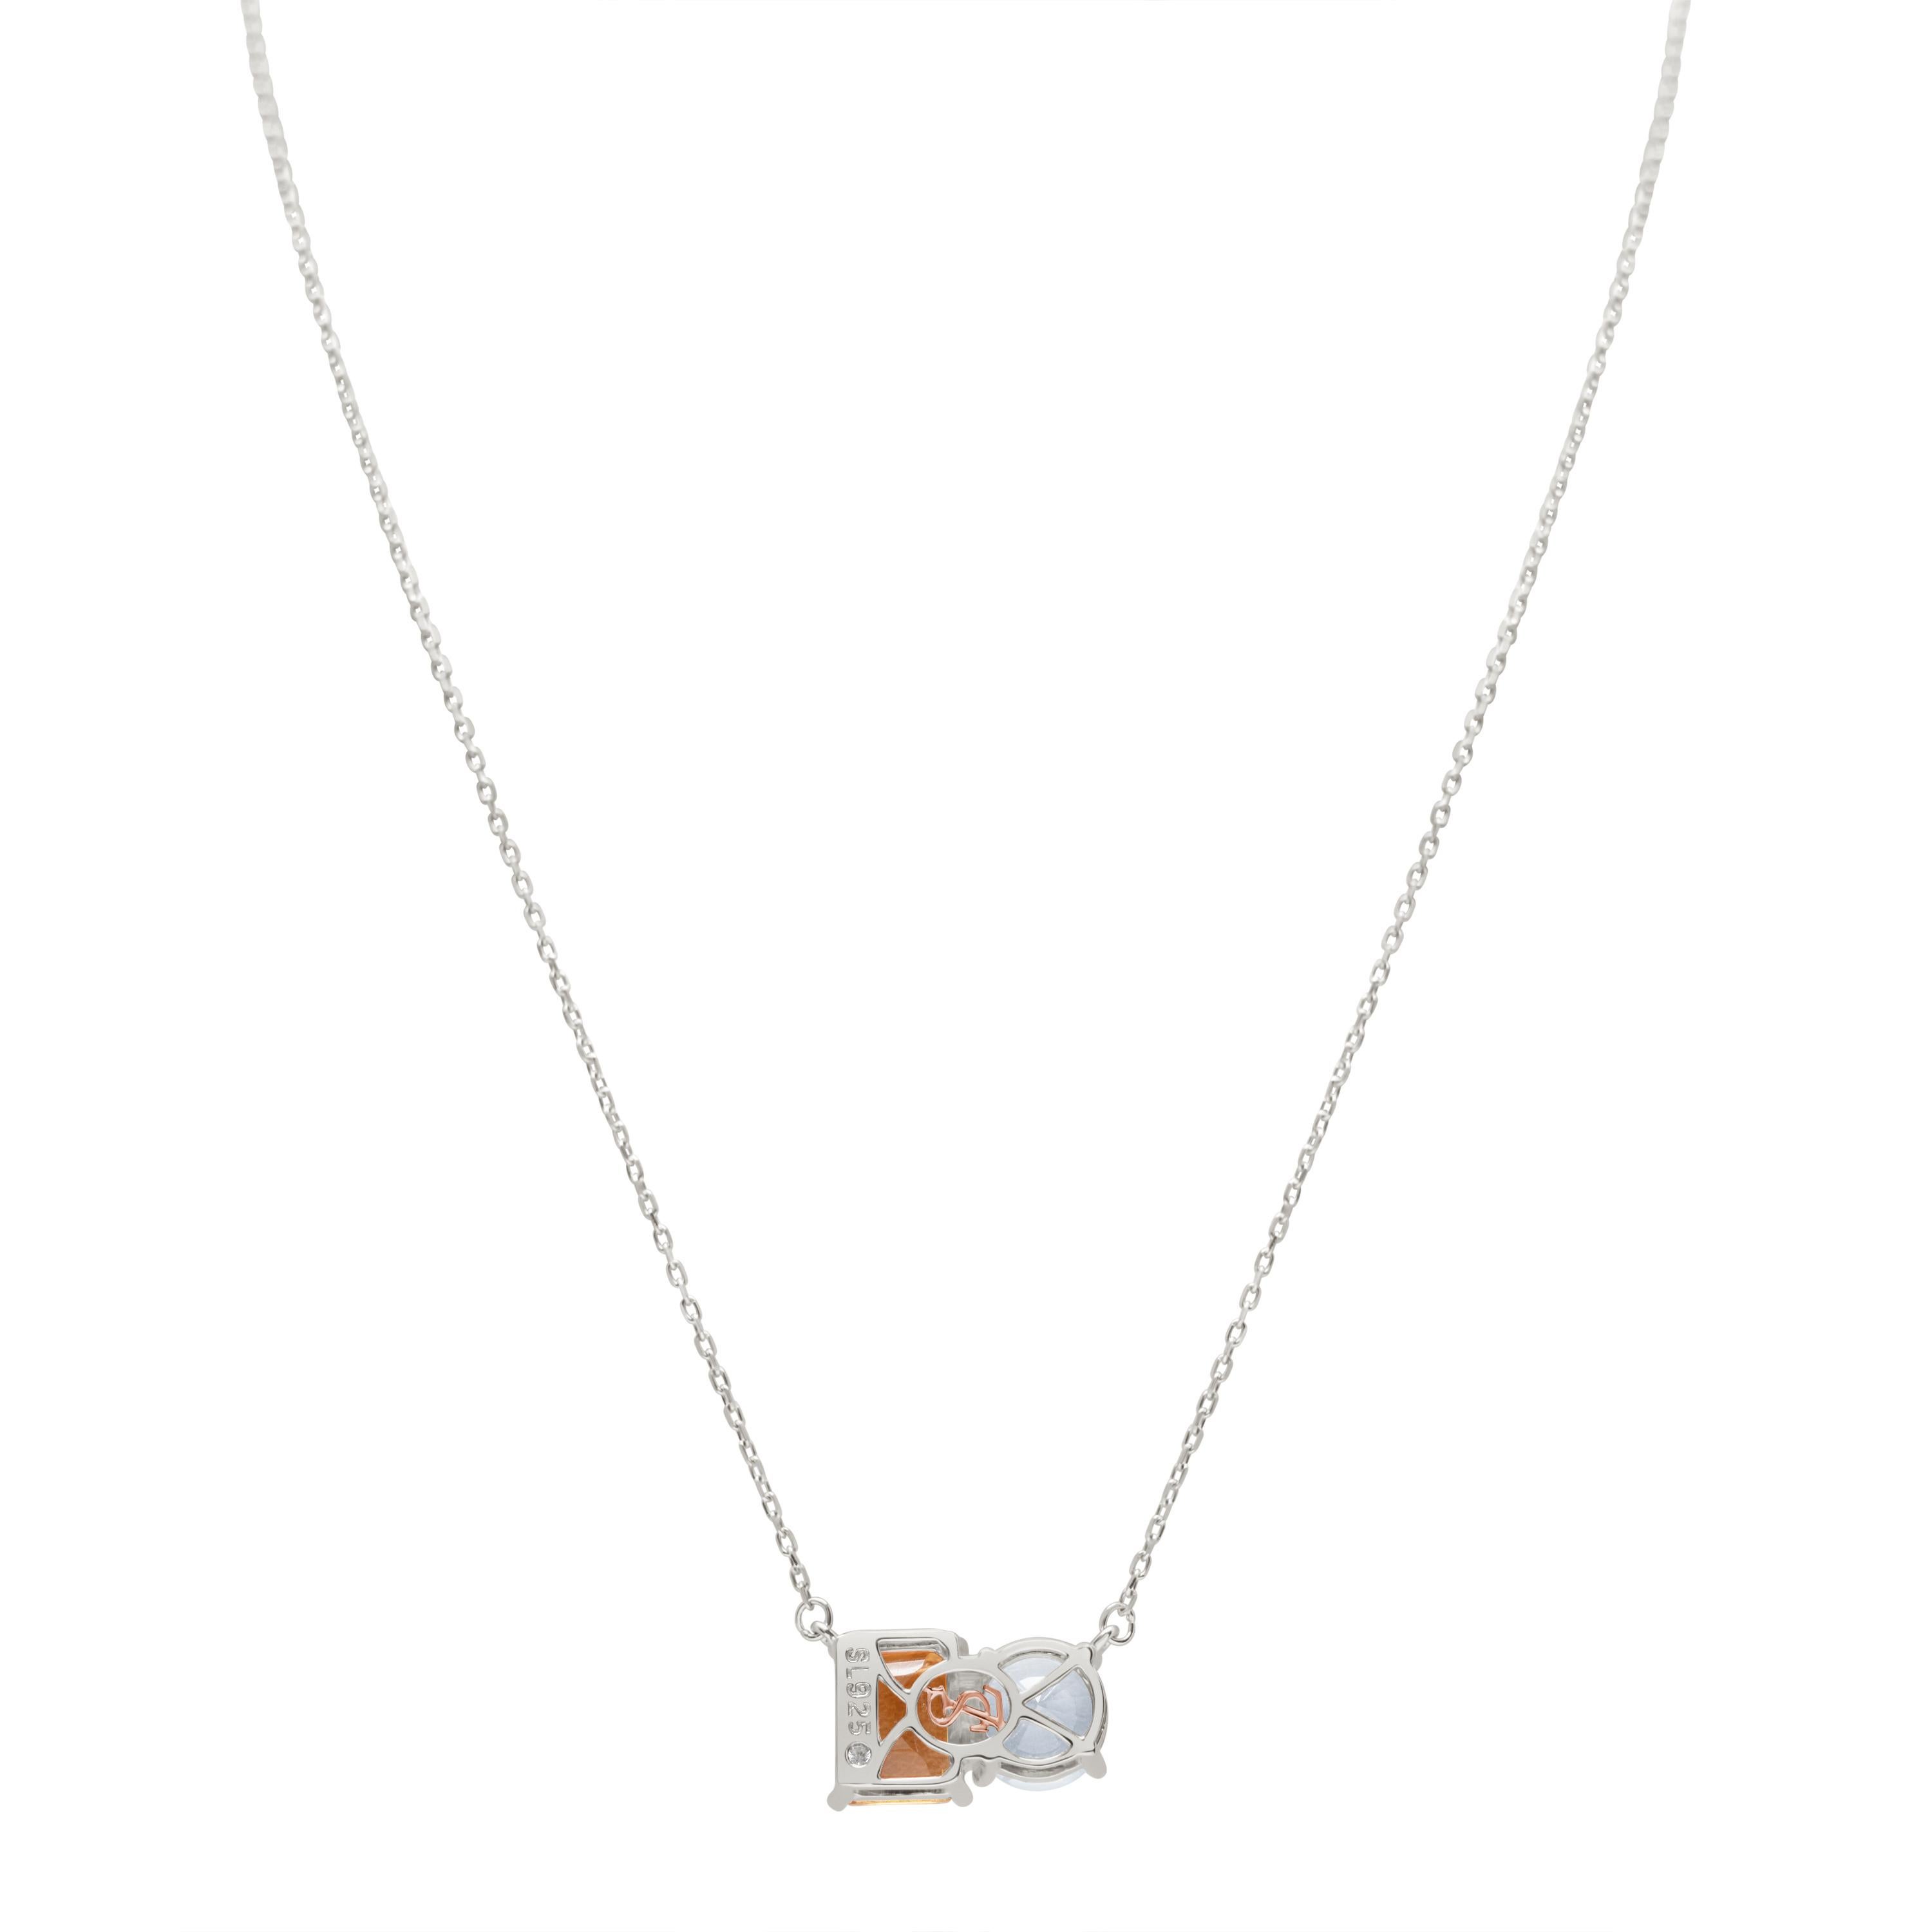 Whiting dans des tons de blanc et d'orange, ce collier Suzy Levian est tout à fait dans la tendance et présente une topaze blanche de taille ronde et une citrine orange de taille émeraude parfaitement assorties. Ce collier symbolise l'association